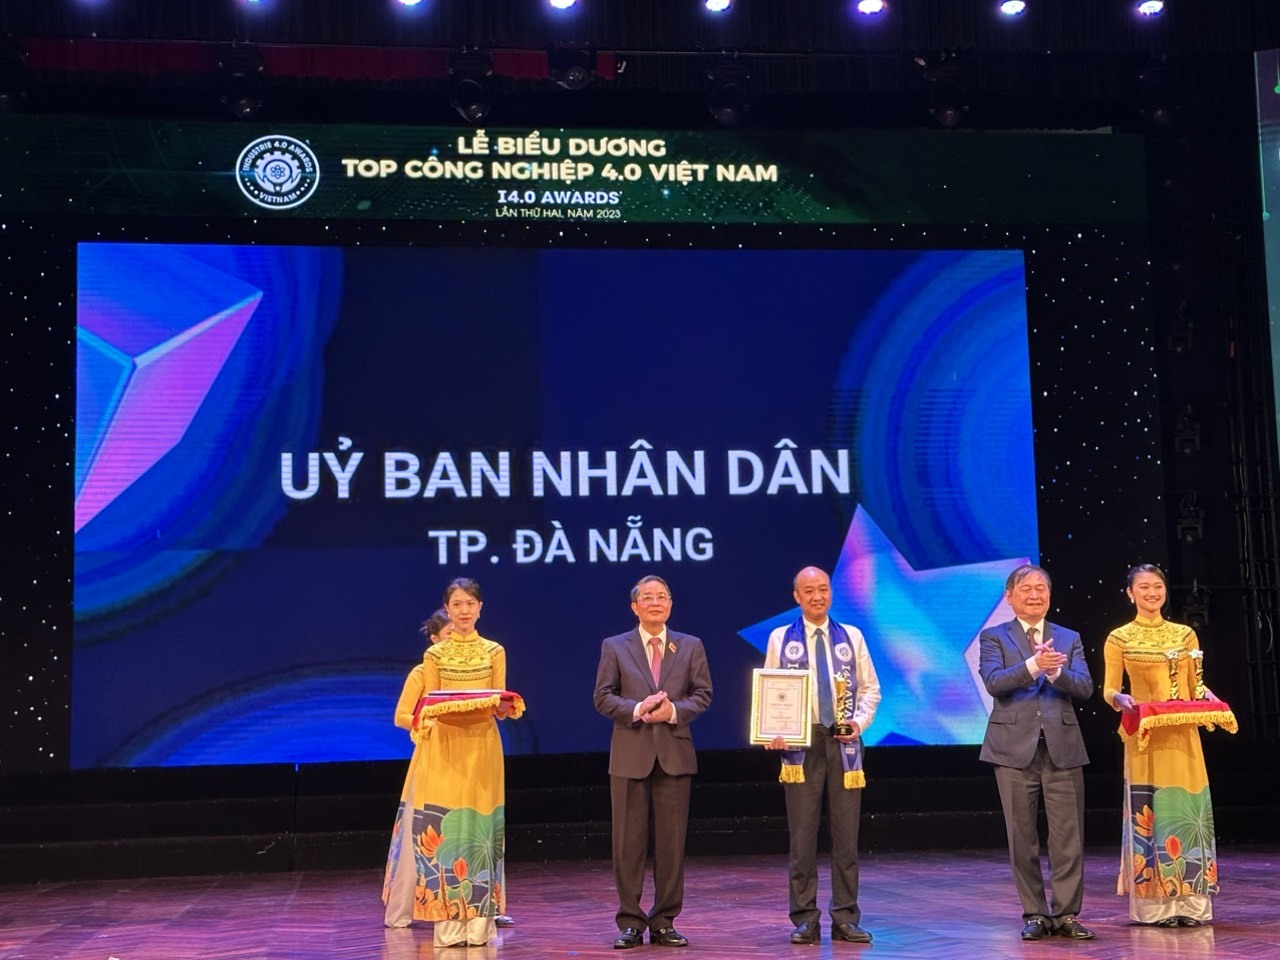 UBND TP Đà Nẵng được trao giải thưởng tại hạng mục “Top tổ chức, địa phương tiêu biểu chủ động thực hiện cách mạng công nghiệp 4.0 và chuyển đổi số“. Ảnh: Ban tổ chức  